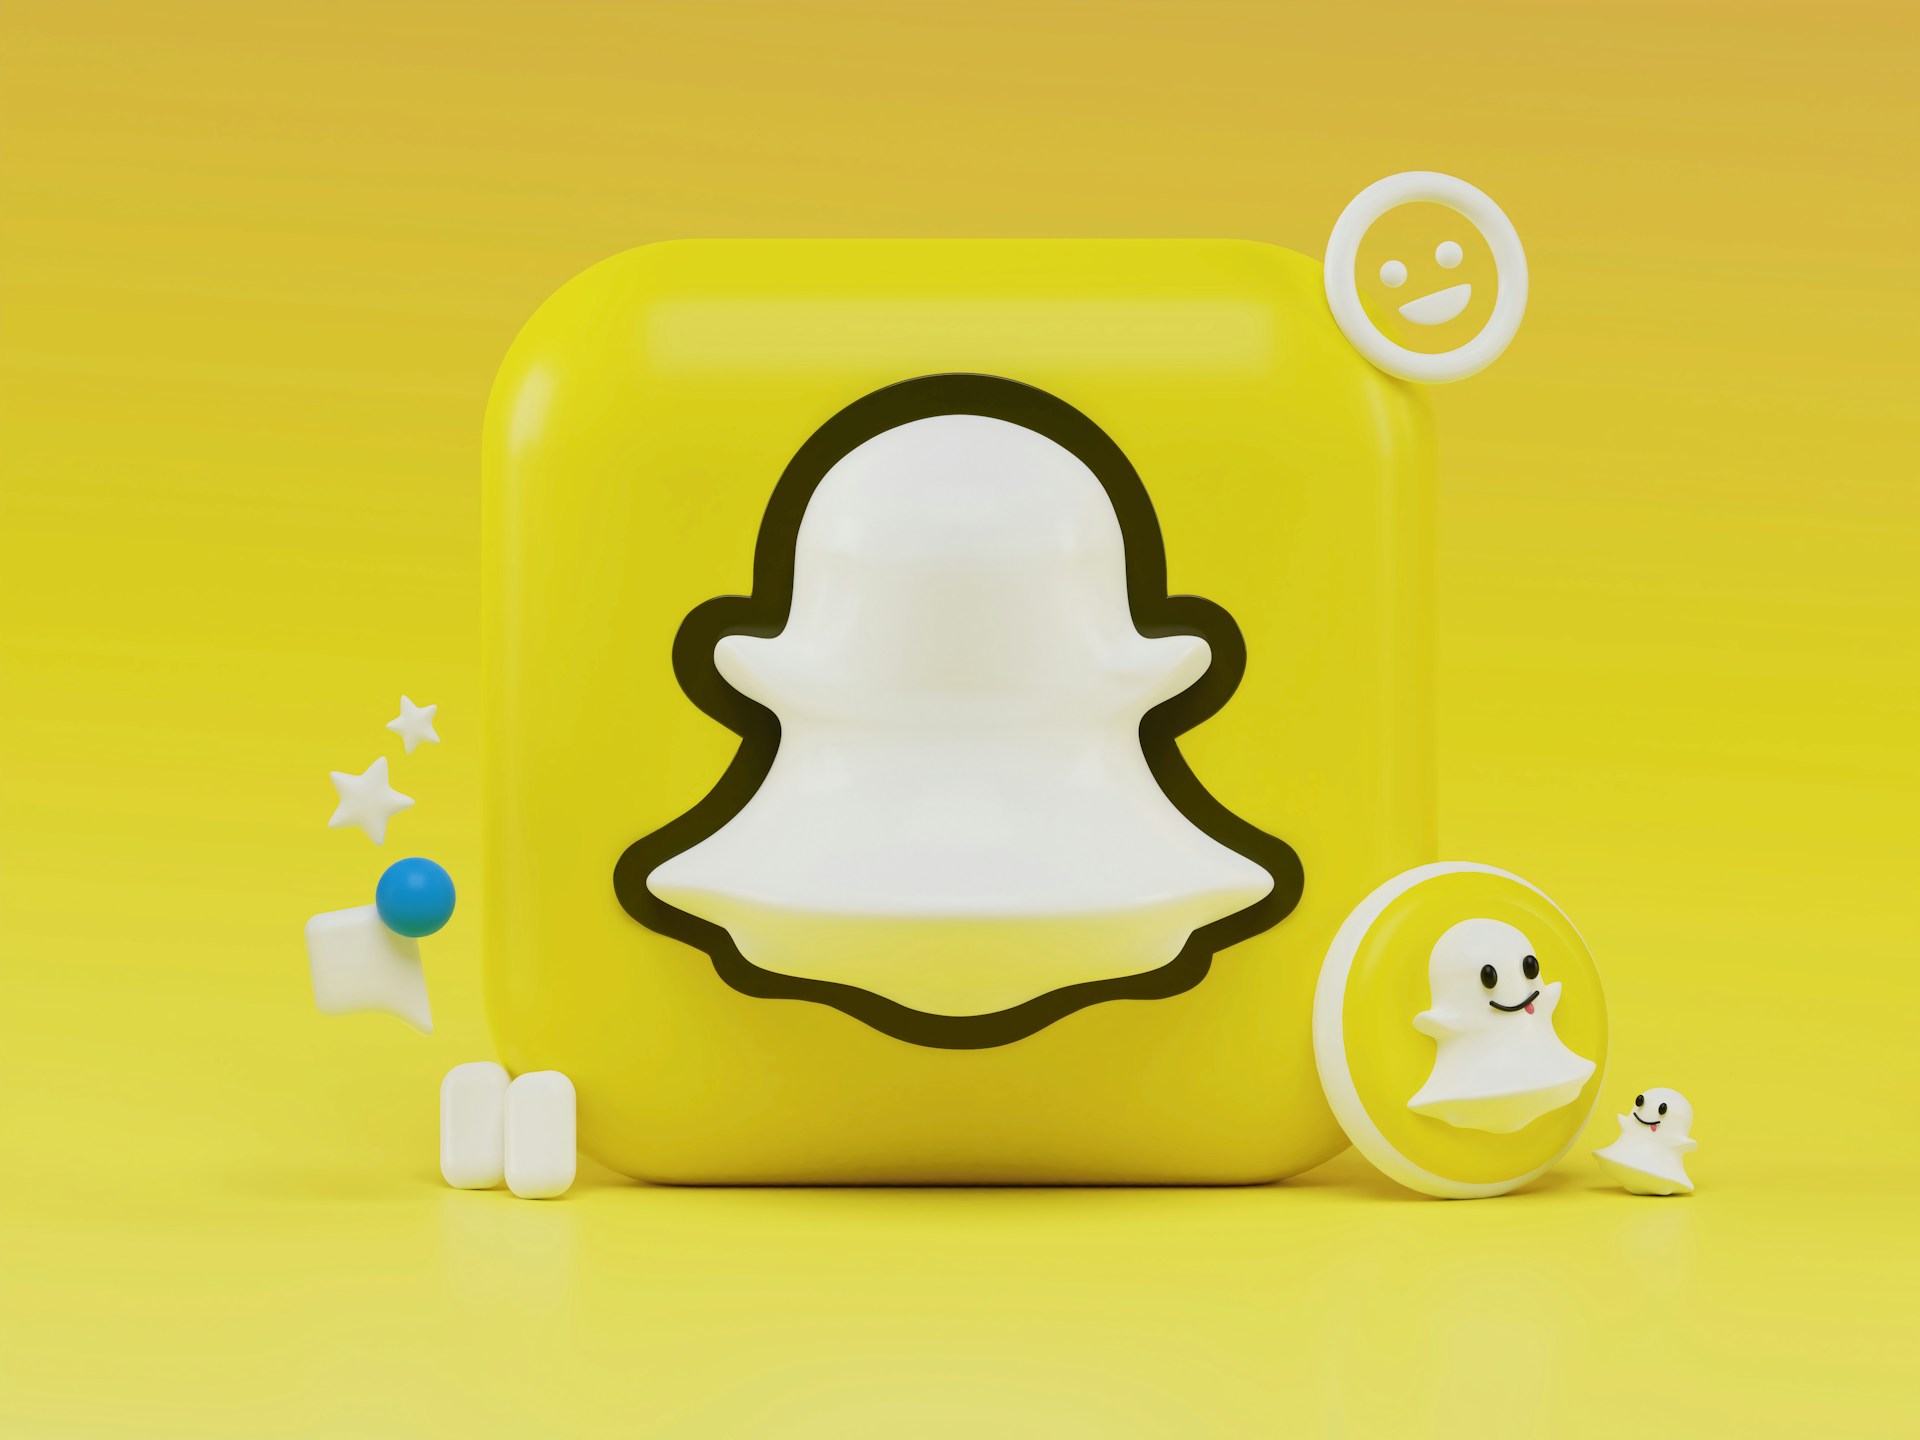 Snapchat heeft zijn chat-AI geleerd herinneringen in te stellen en berichten te bewerken